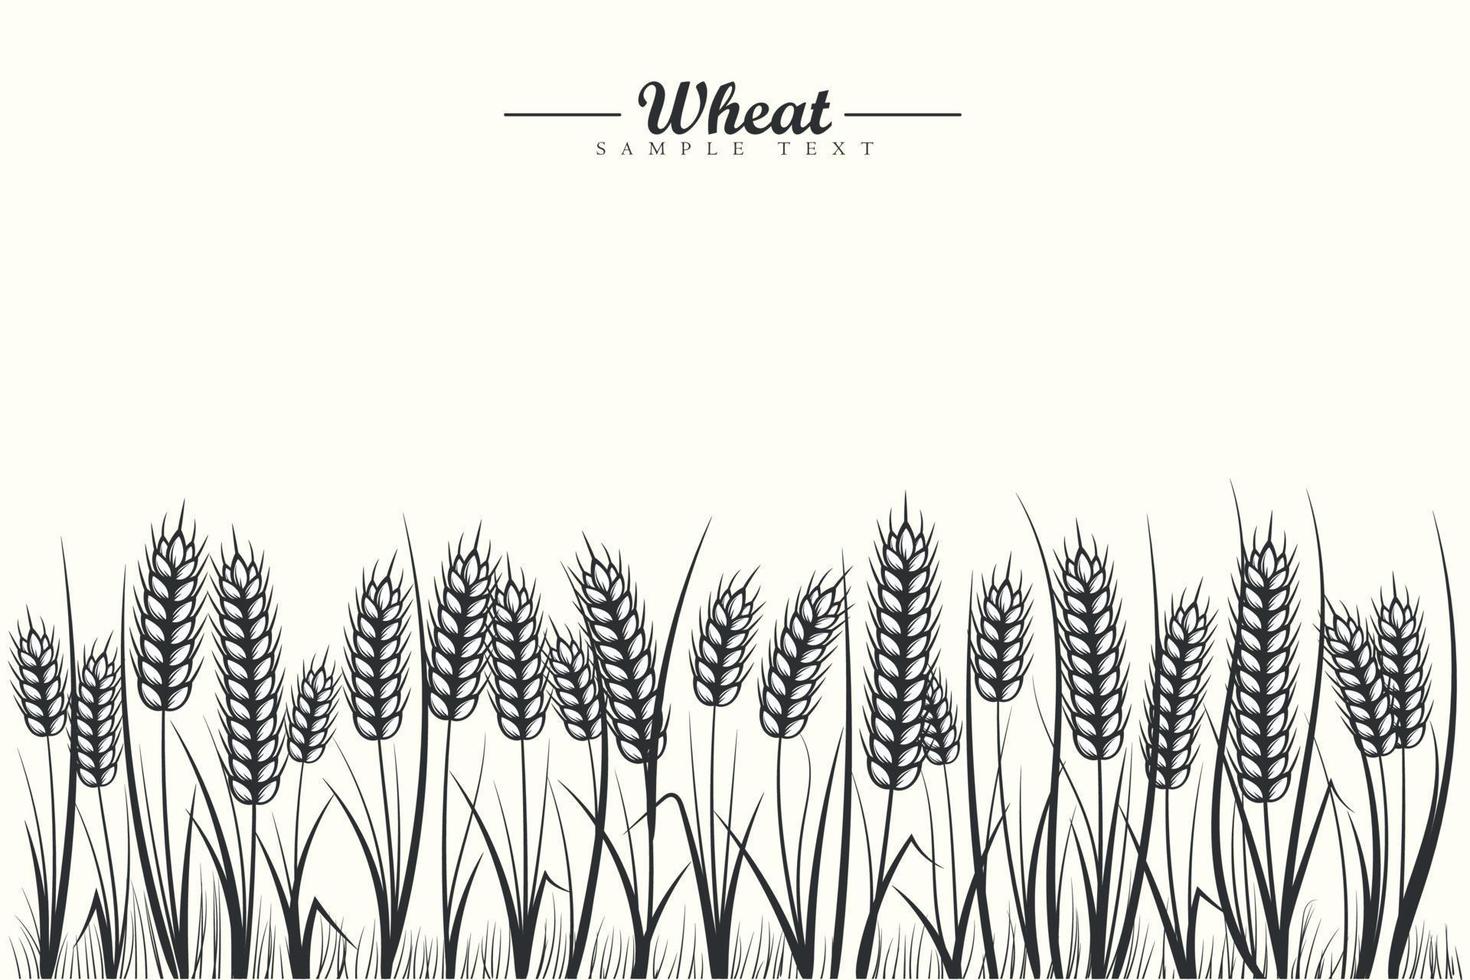 fondo de campo de cereales de trigo blanco y negro con espigas de trigo y hoja de trigo sobre fondo blanco vector